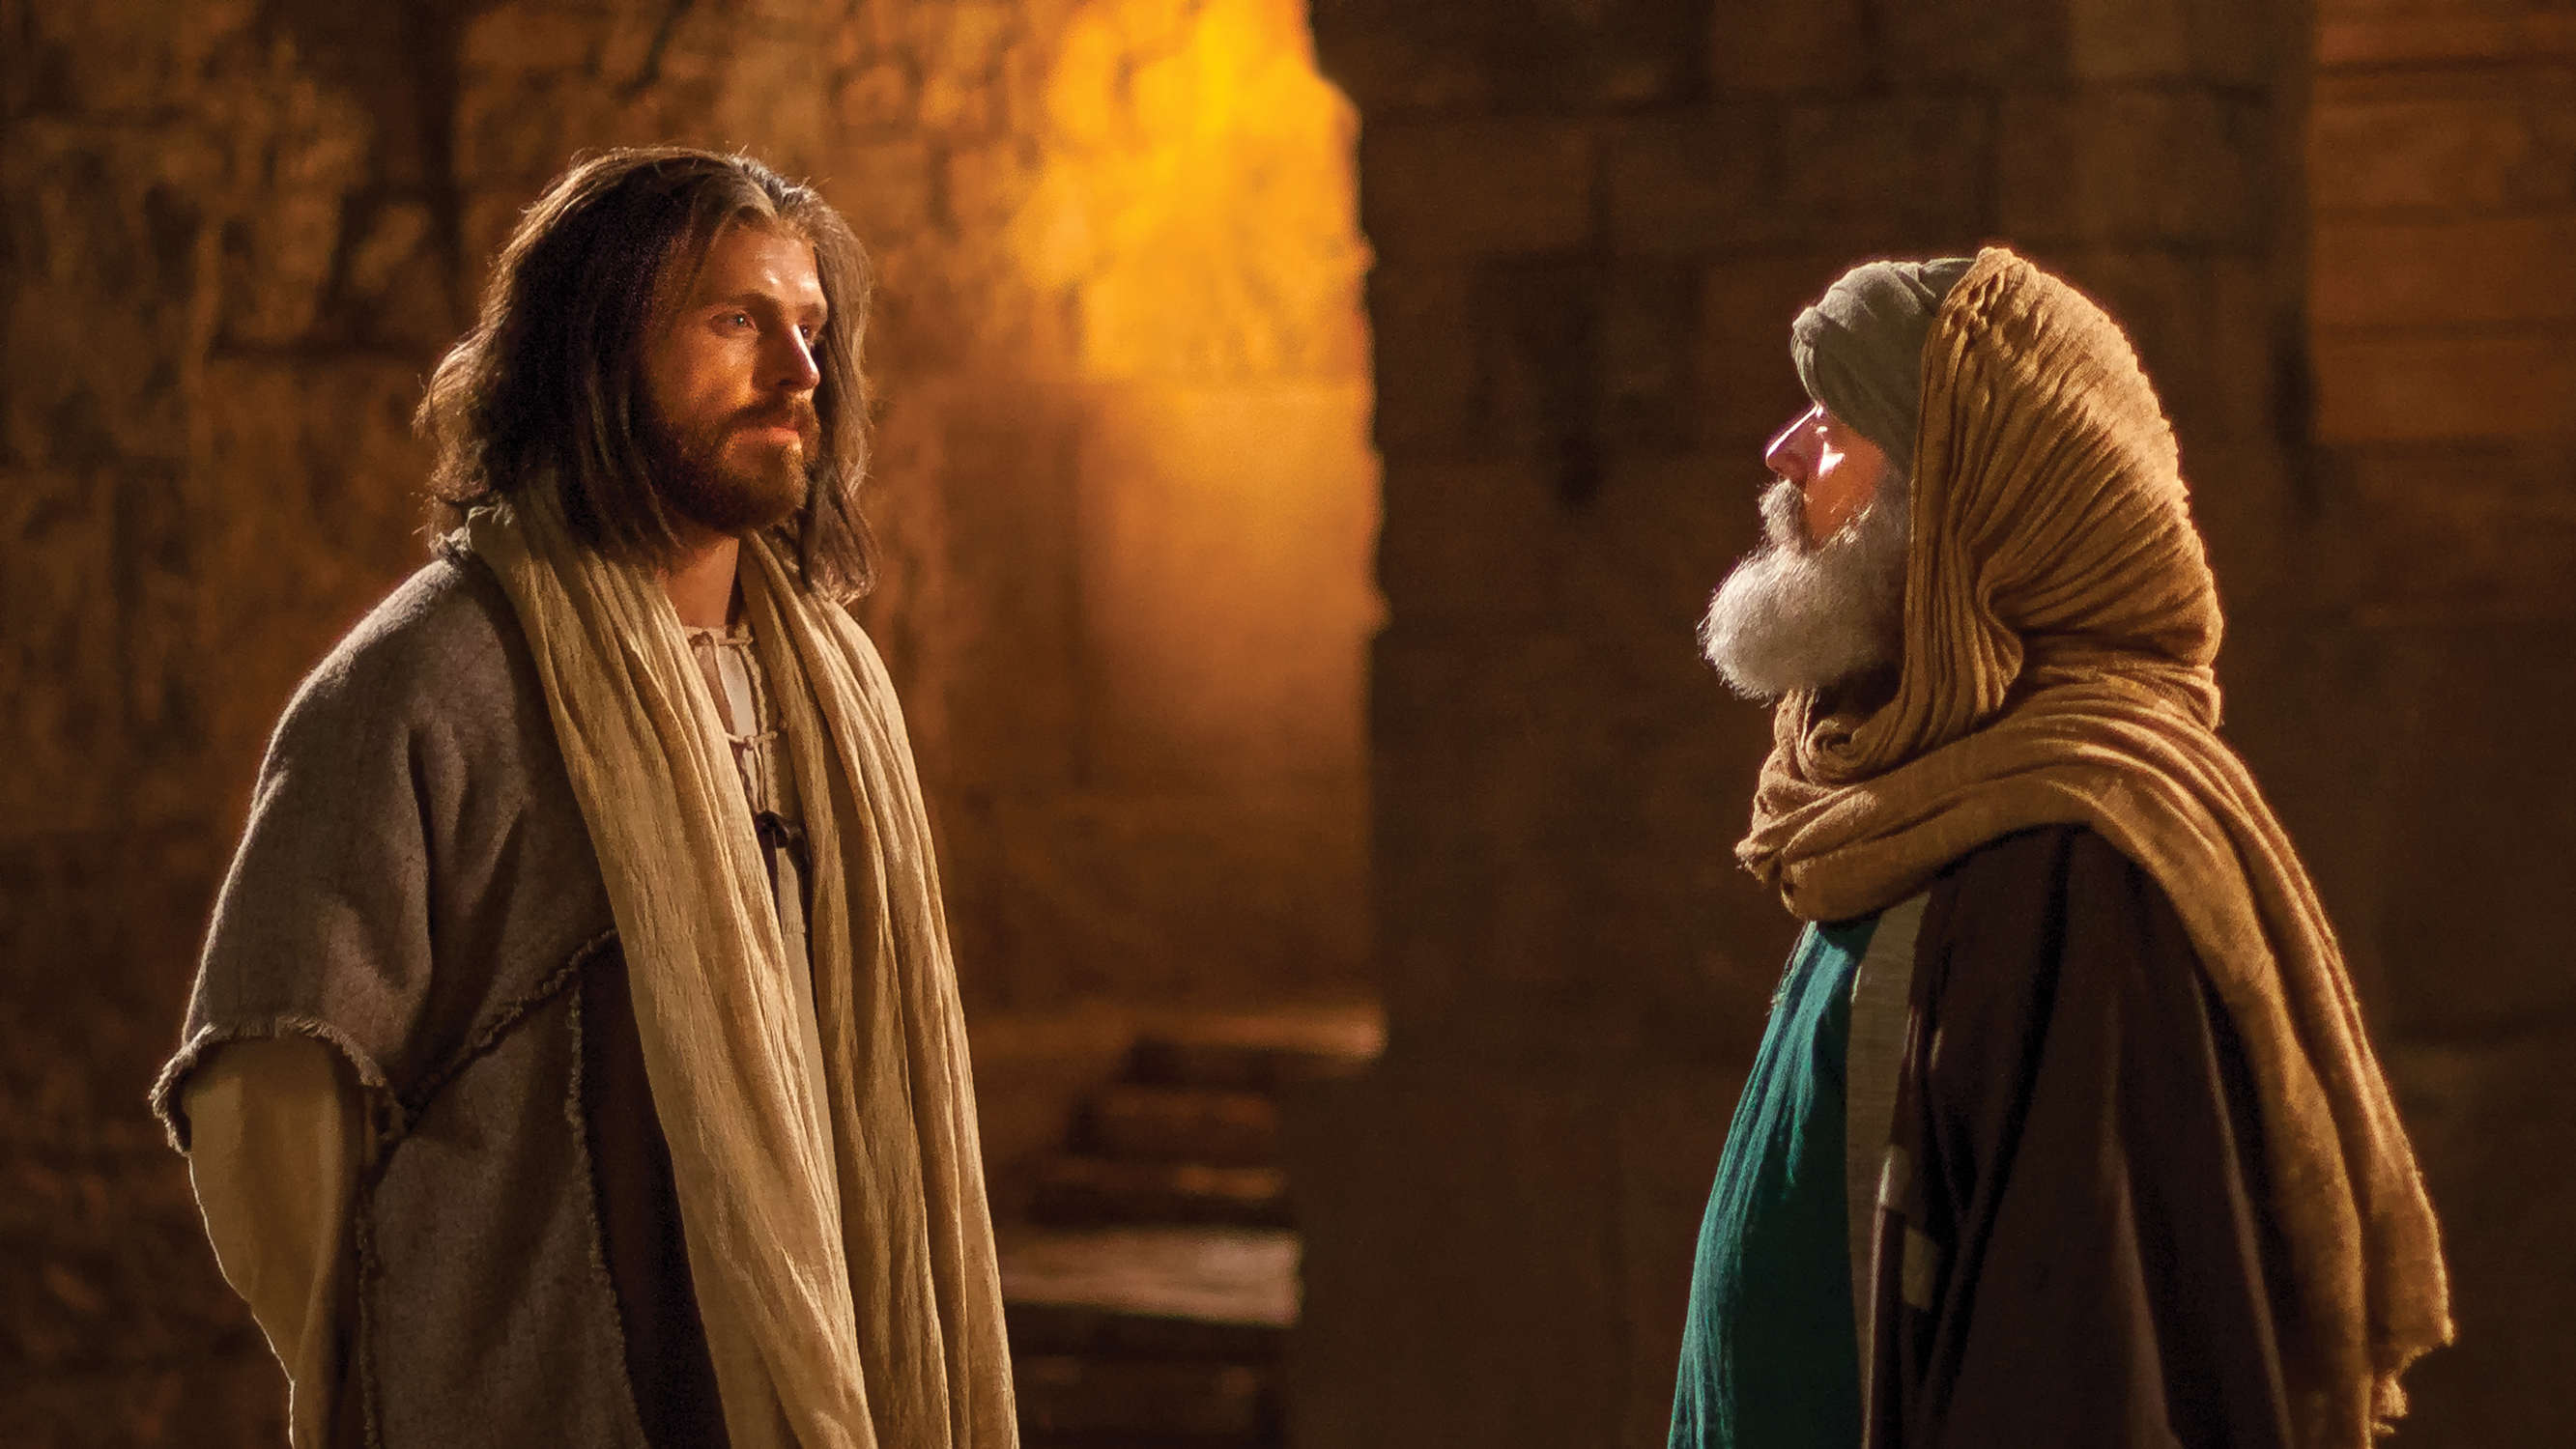 Jesus standing and speaking with Nicodemus.